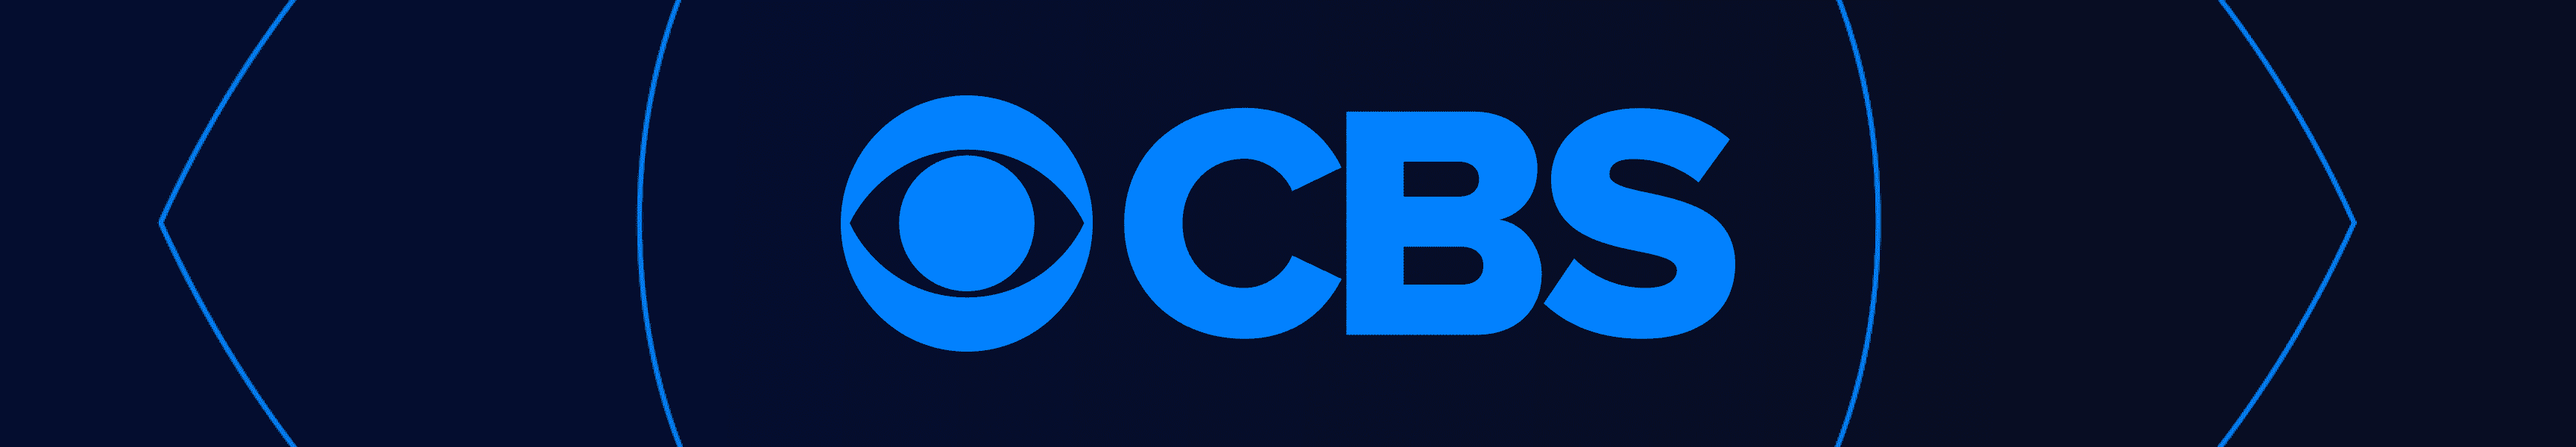 CBS Unterhaltung Decken